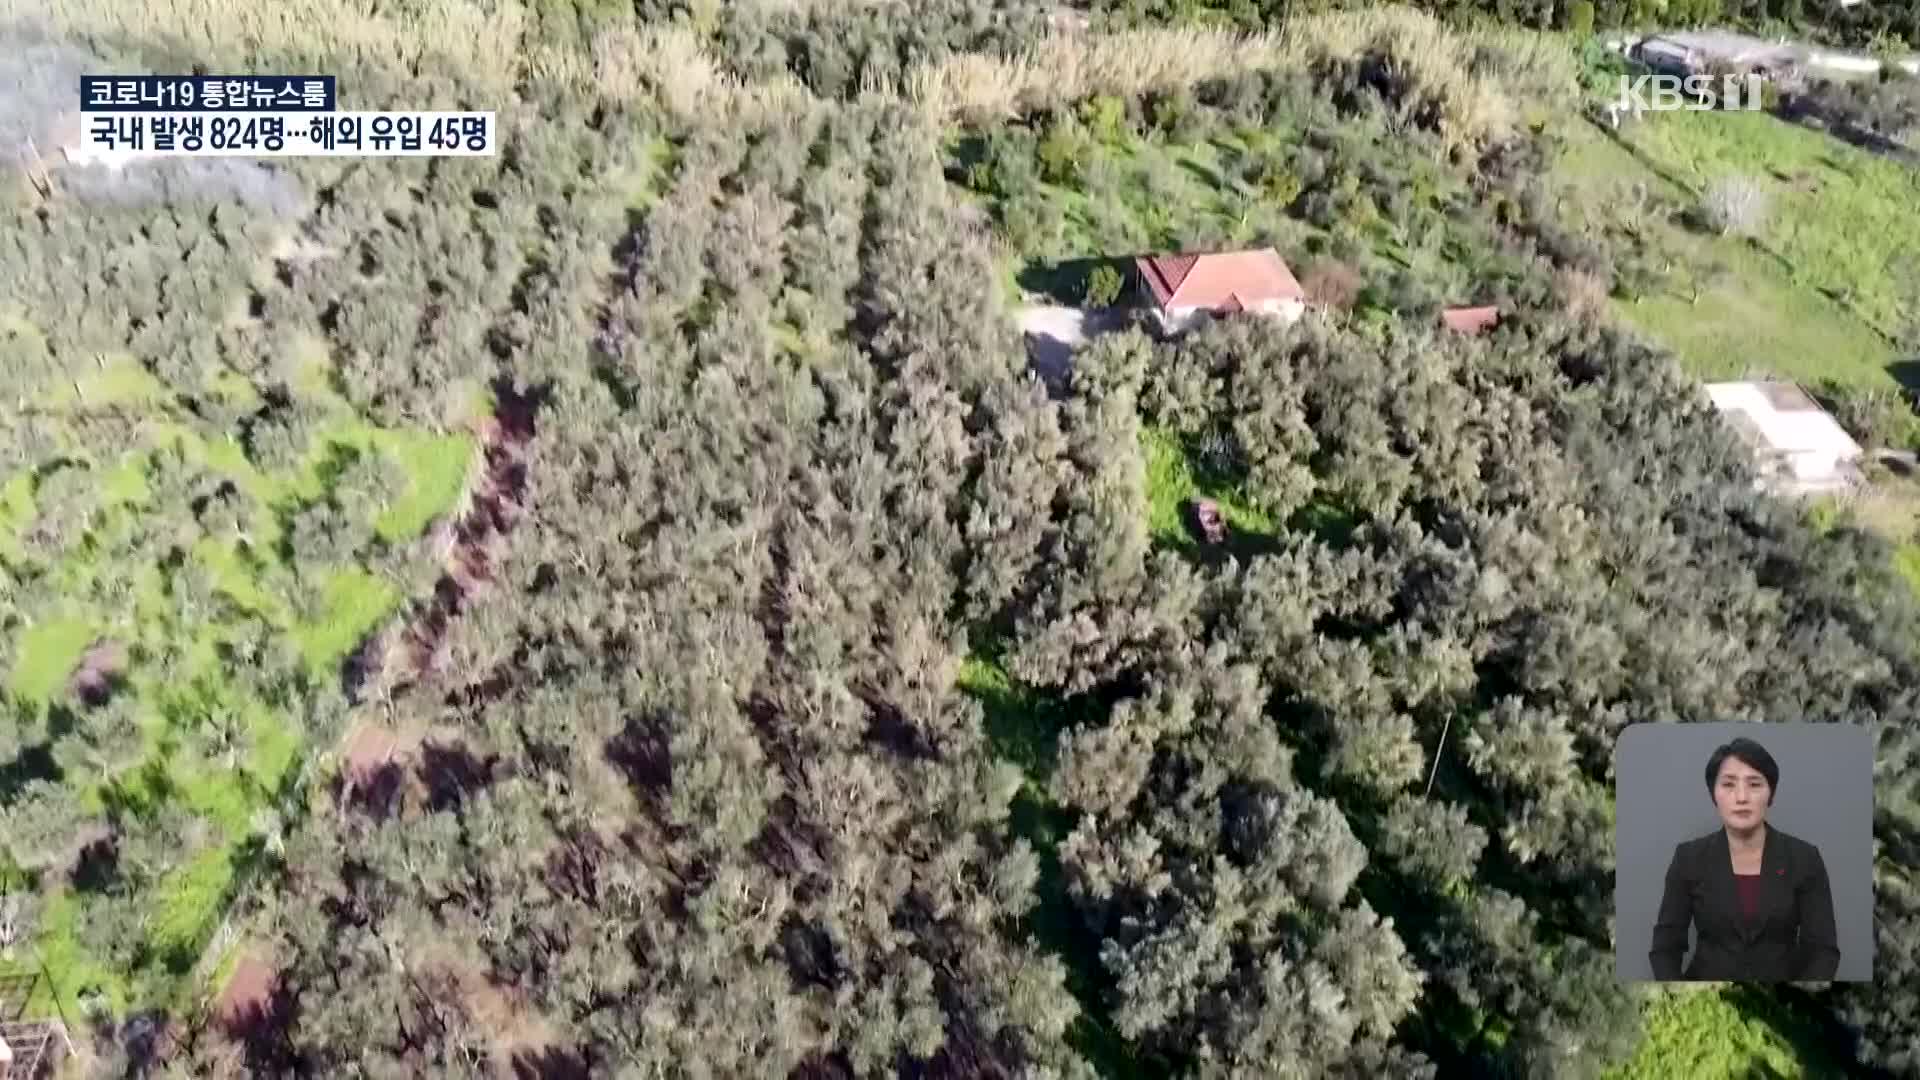 그리스, 올리브 수확기 외국인 일손 없어 막막